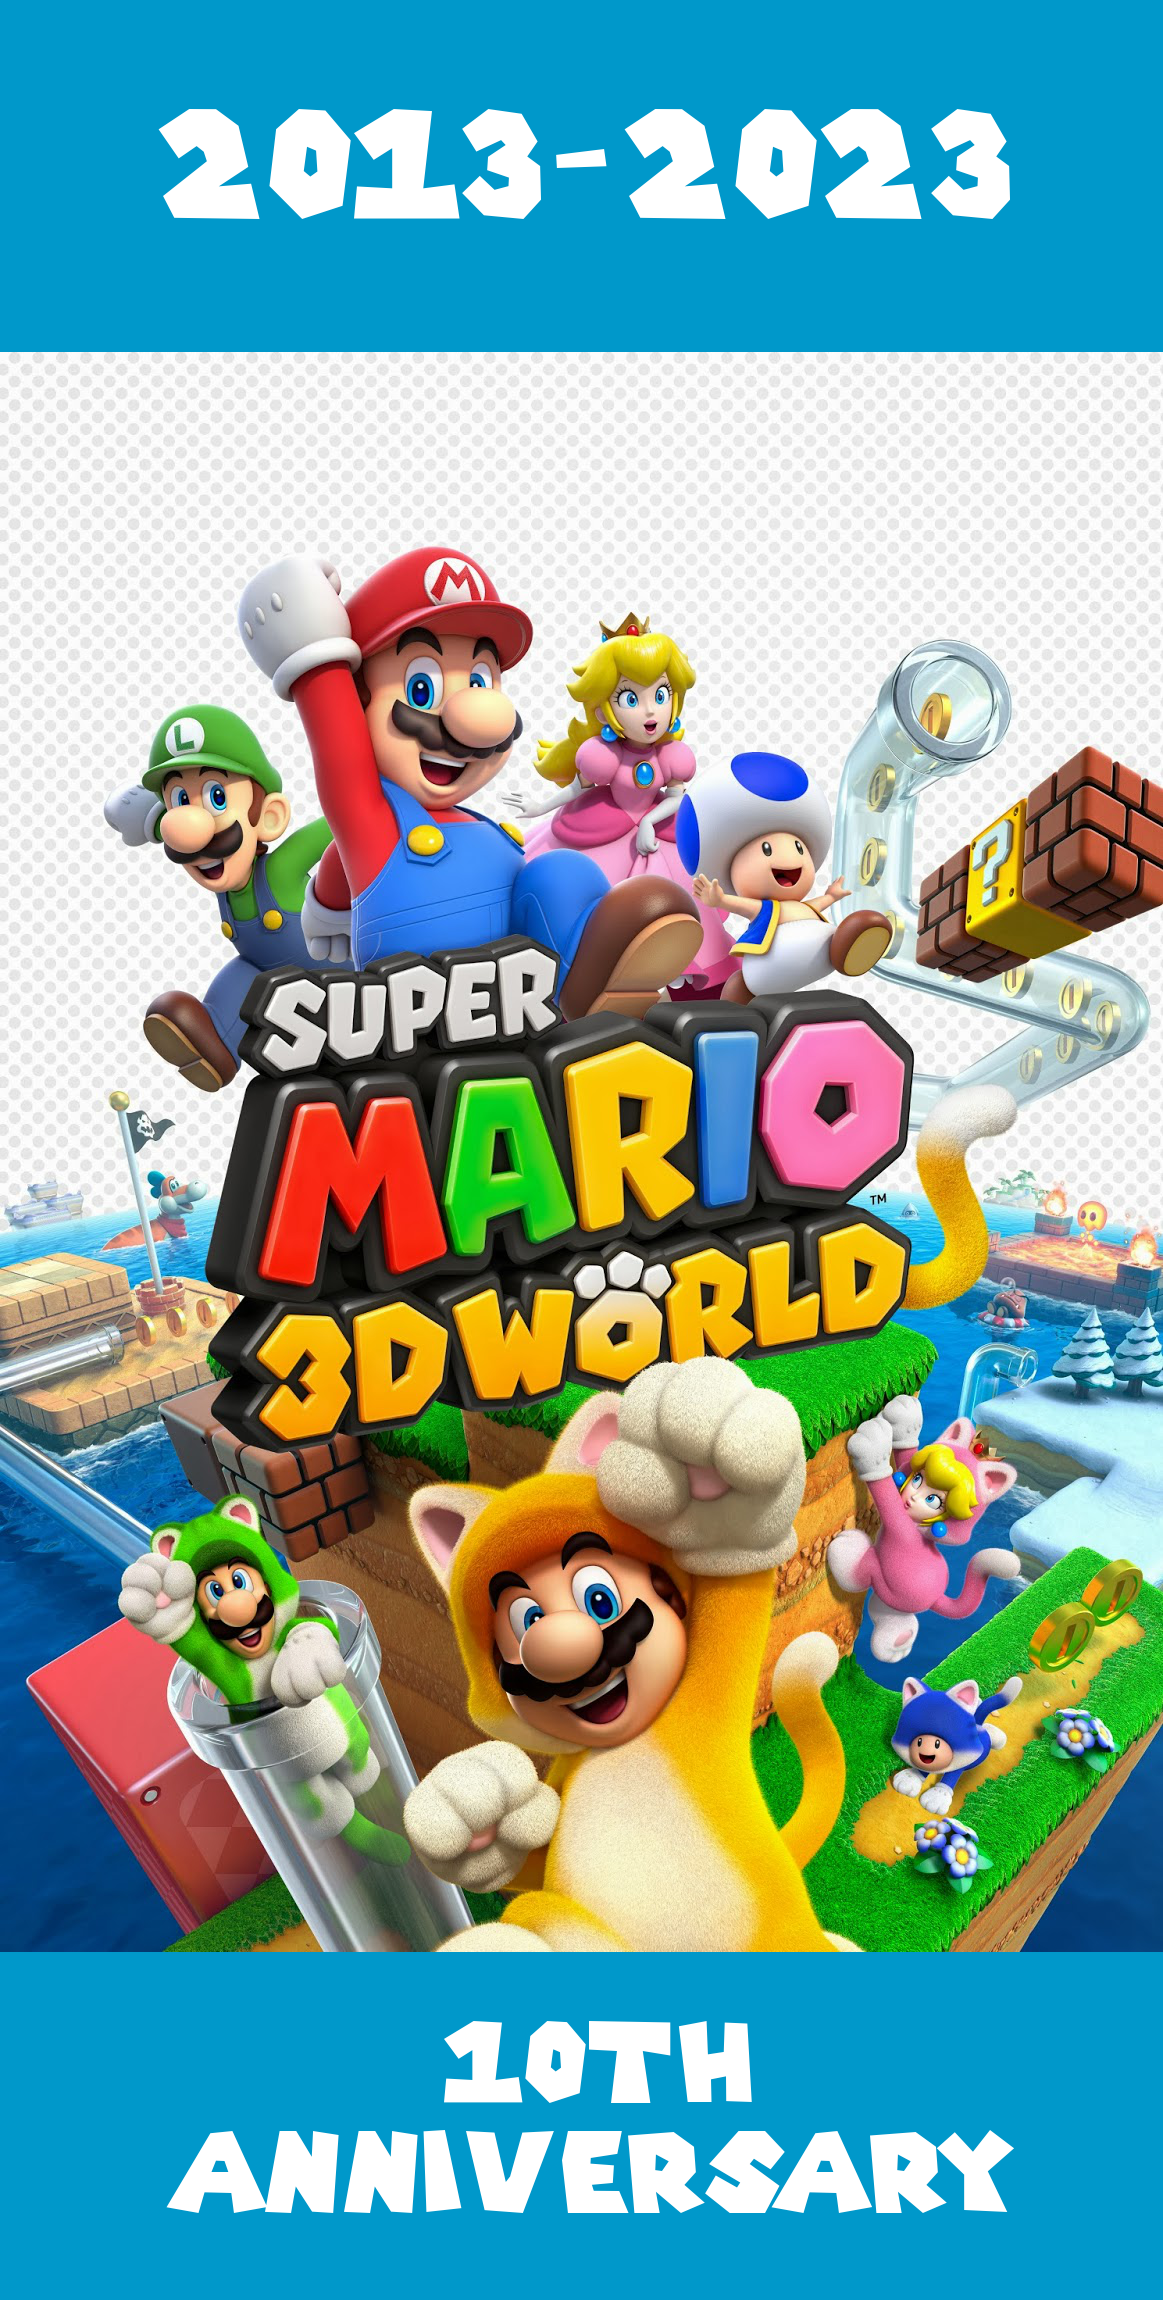 Super Mario 3D World - PlayStation 4 (PS4) by djshby on DeviantArt